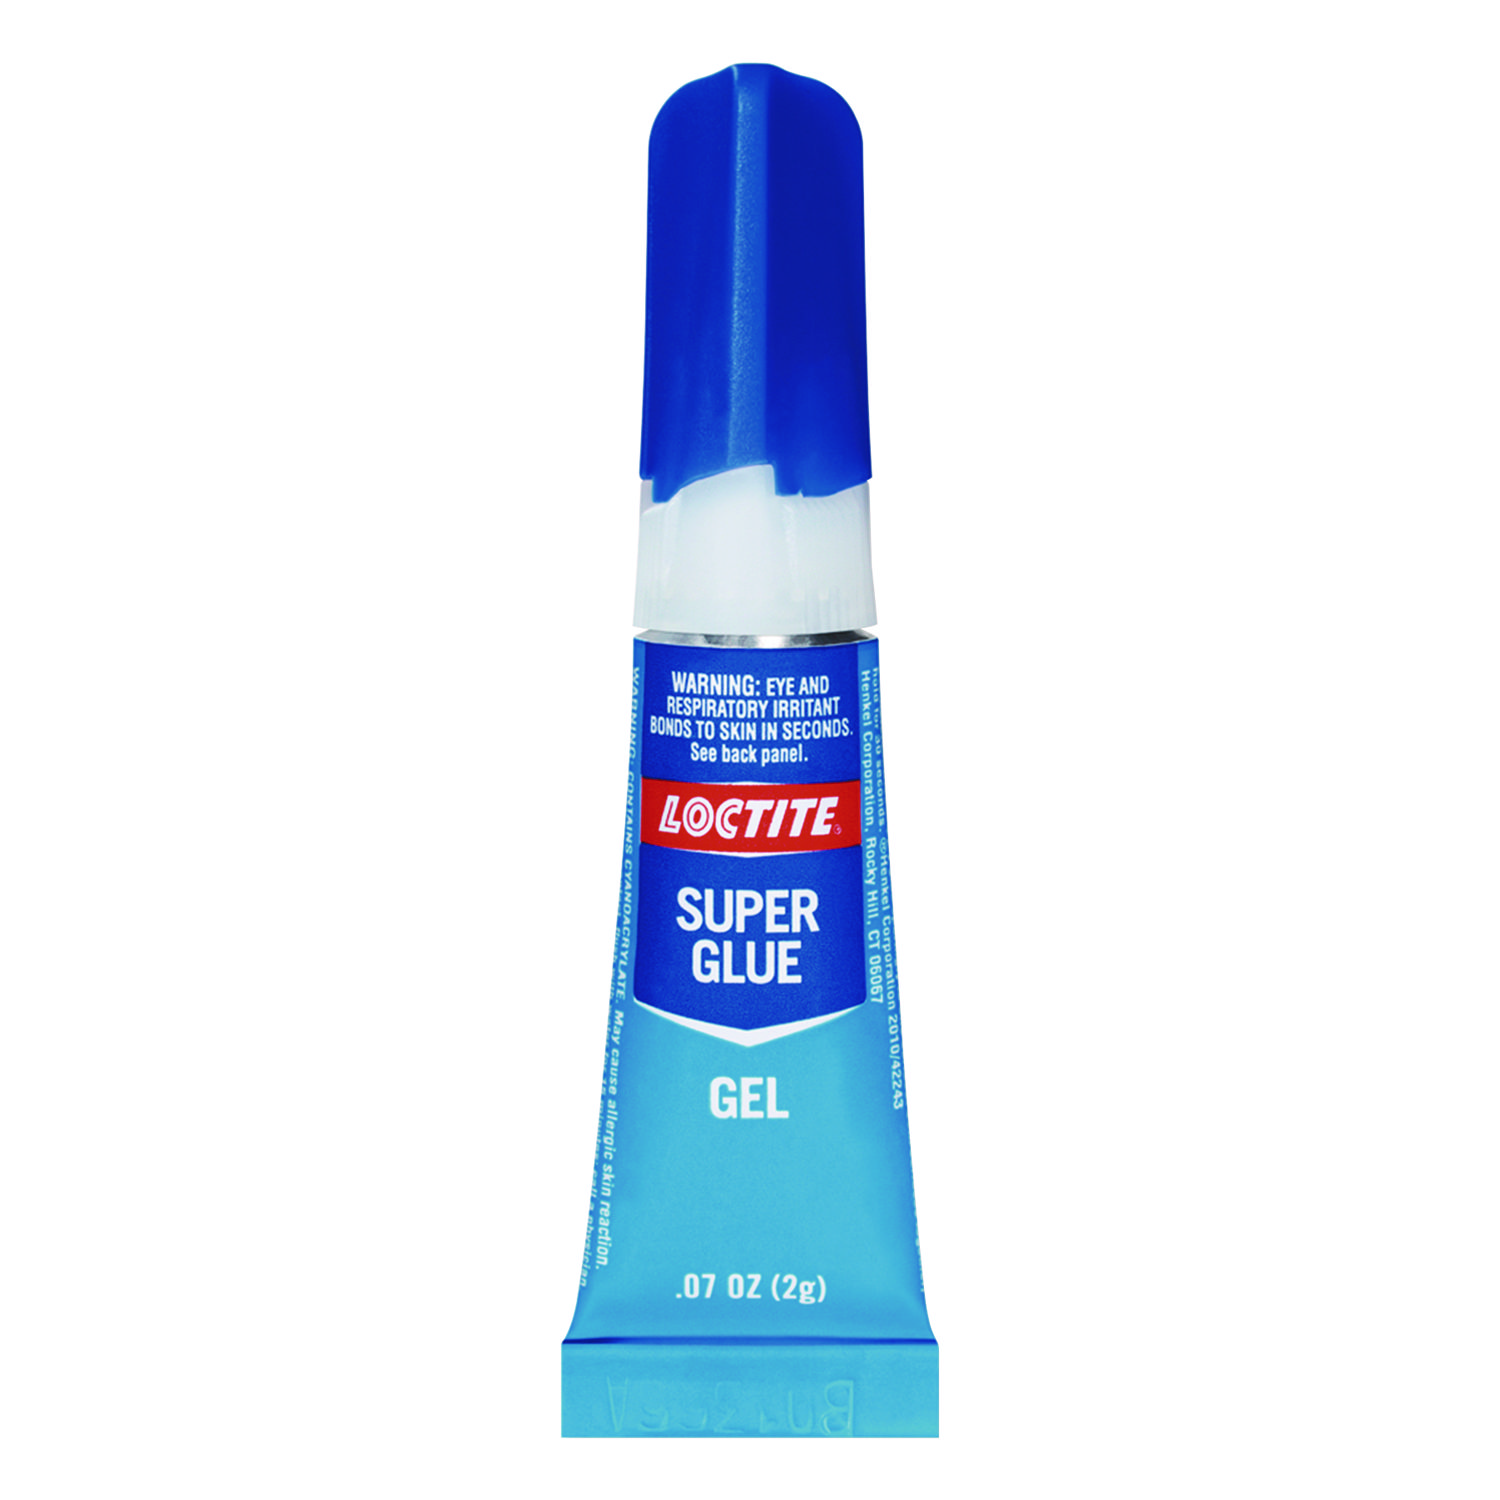 Super Glue Gel, .07 oz. Tube, 2/pack